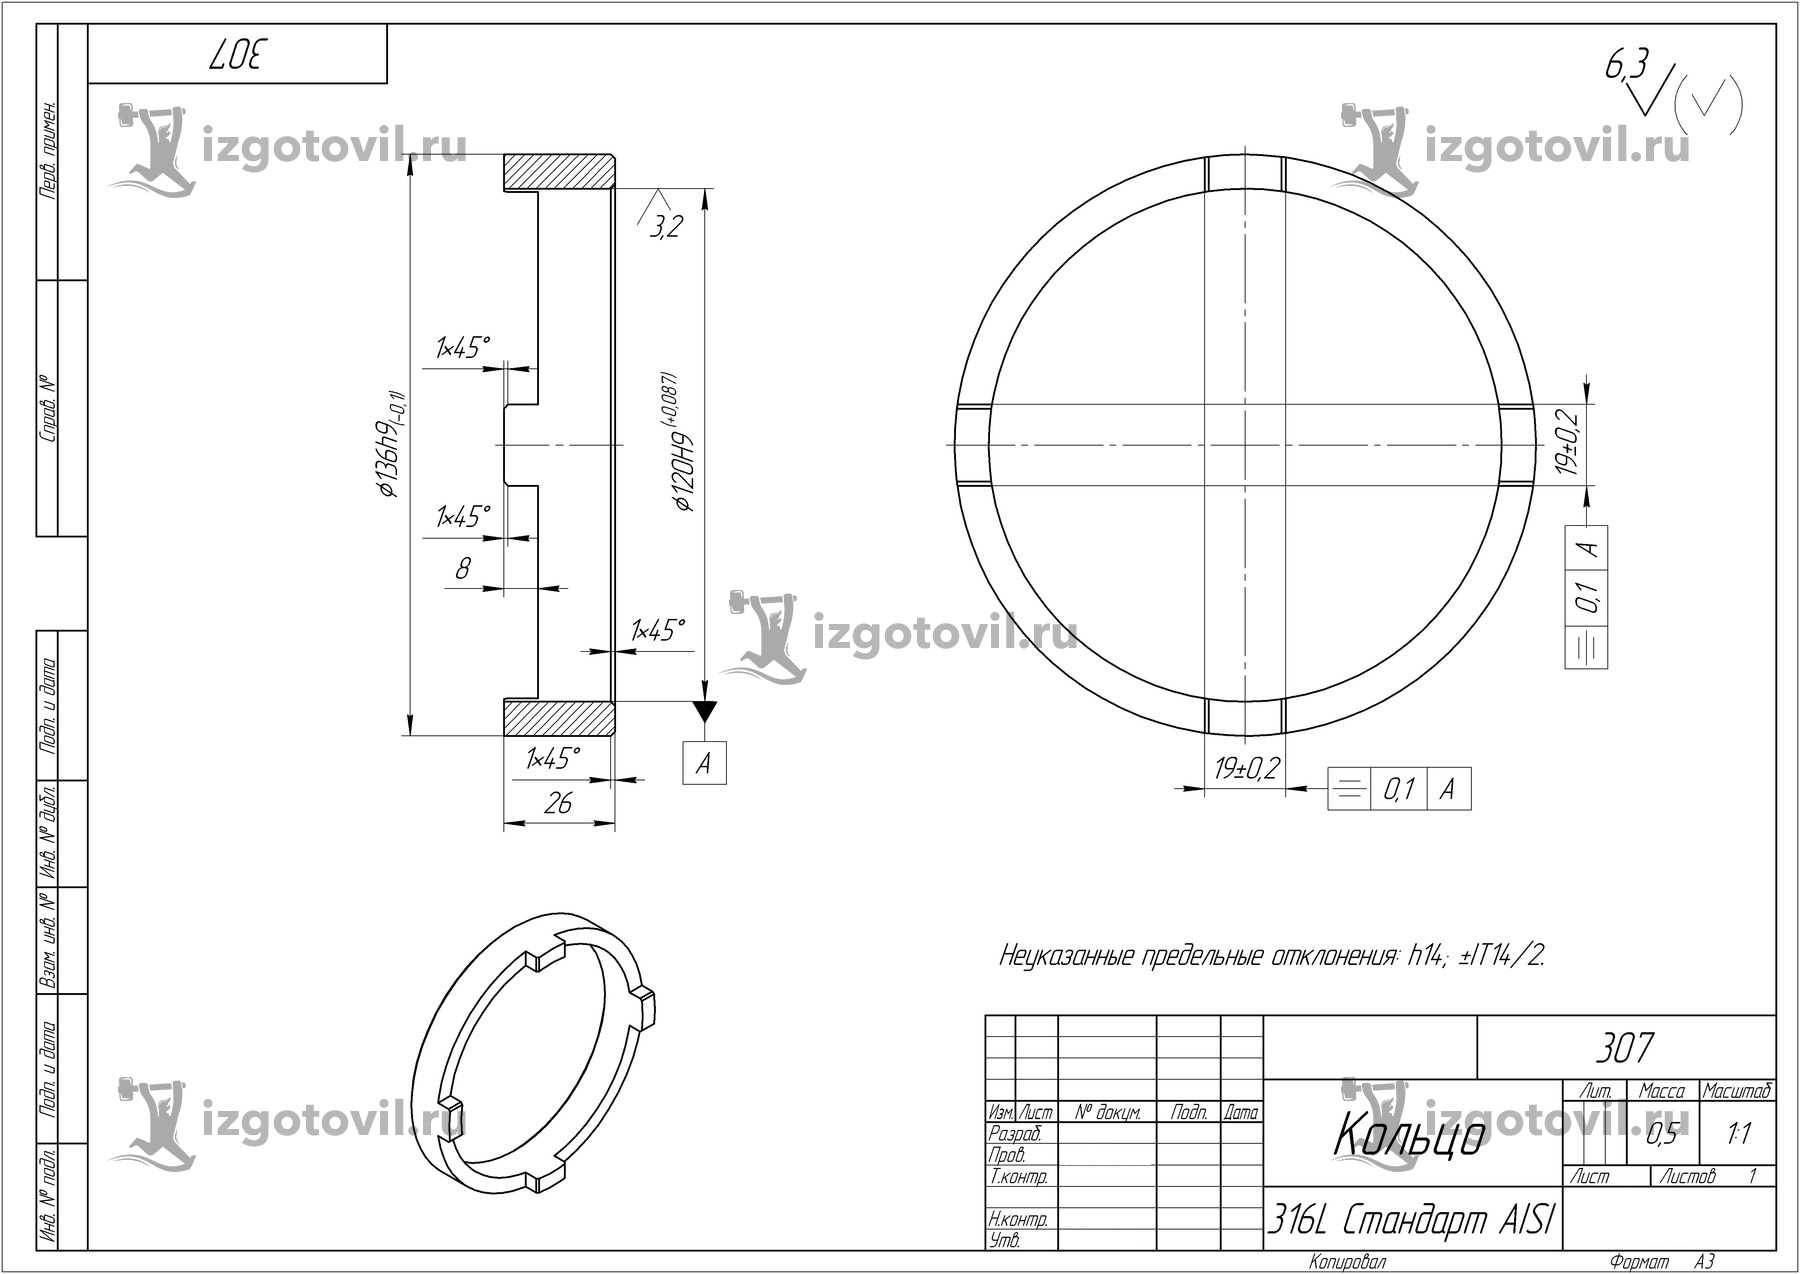 Изготовление деталей по чертежам: кольца,стакан, диск и нож дисковый